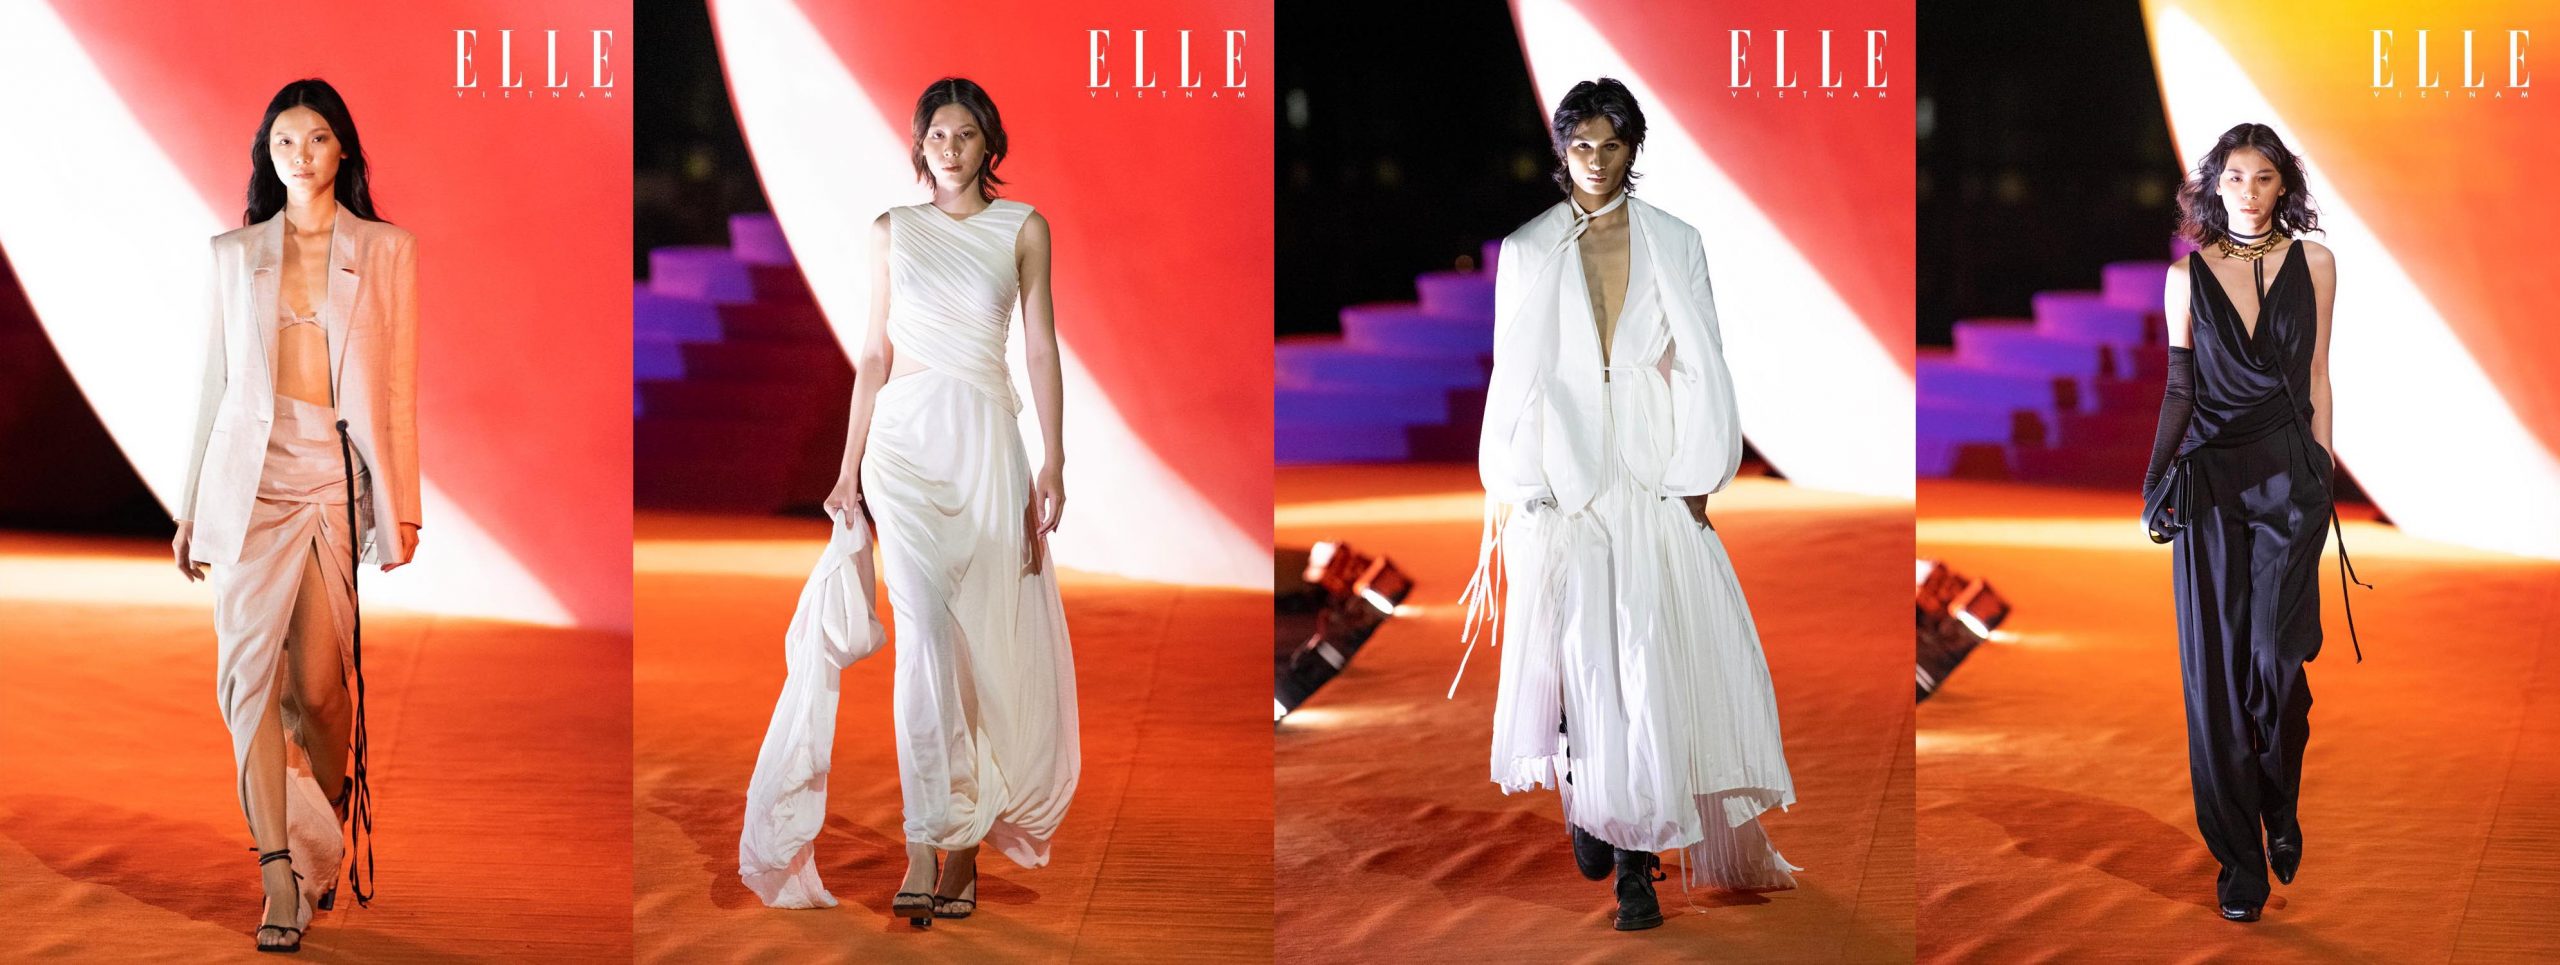 Hơn 100 bộ trang phục của 4 nhà thiết kế trẻ trình diễn tại Elle Fashion